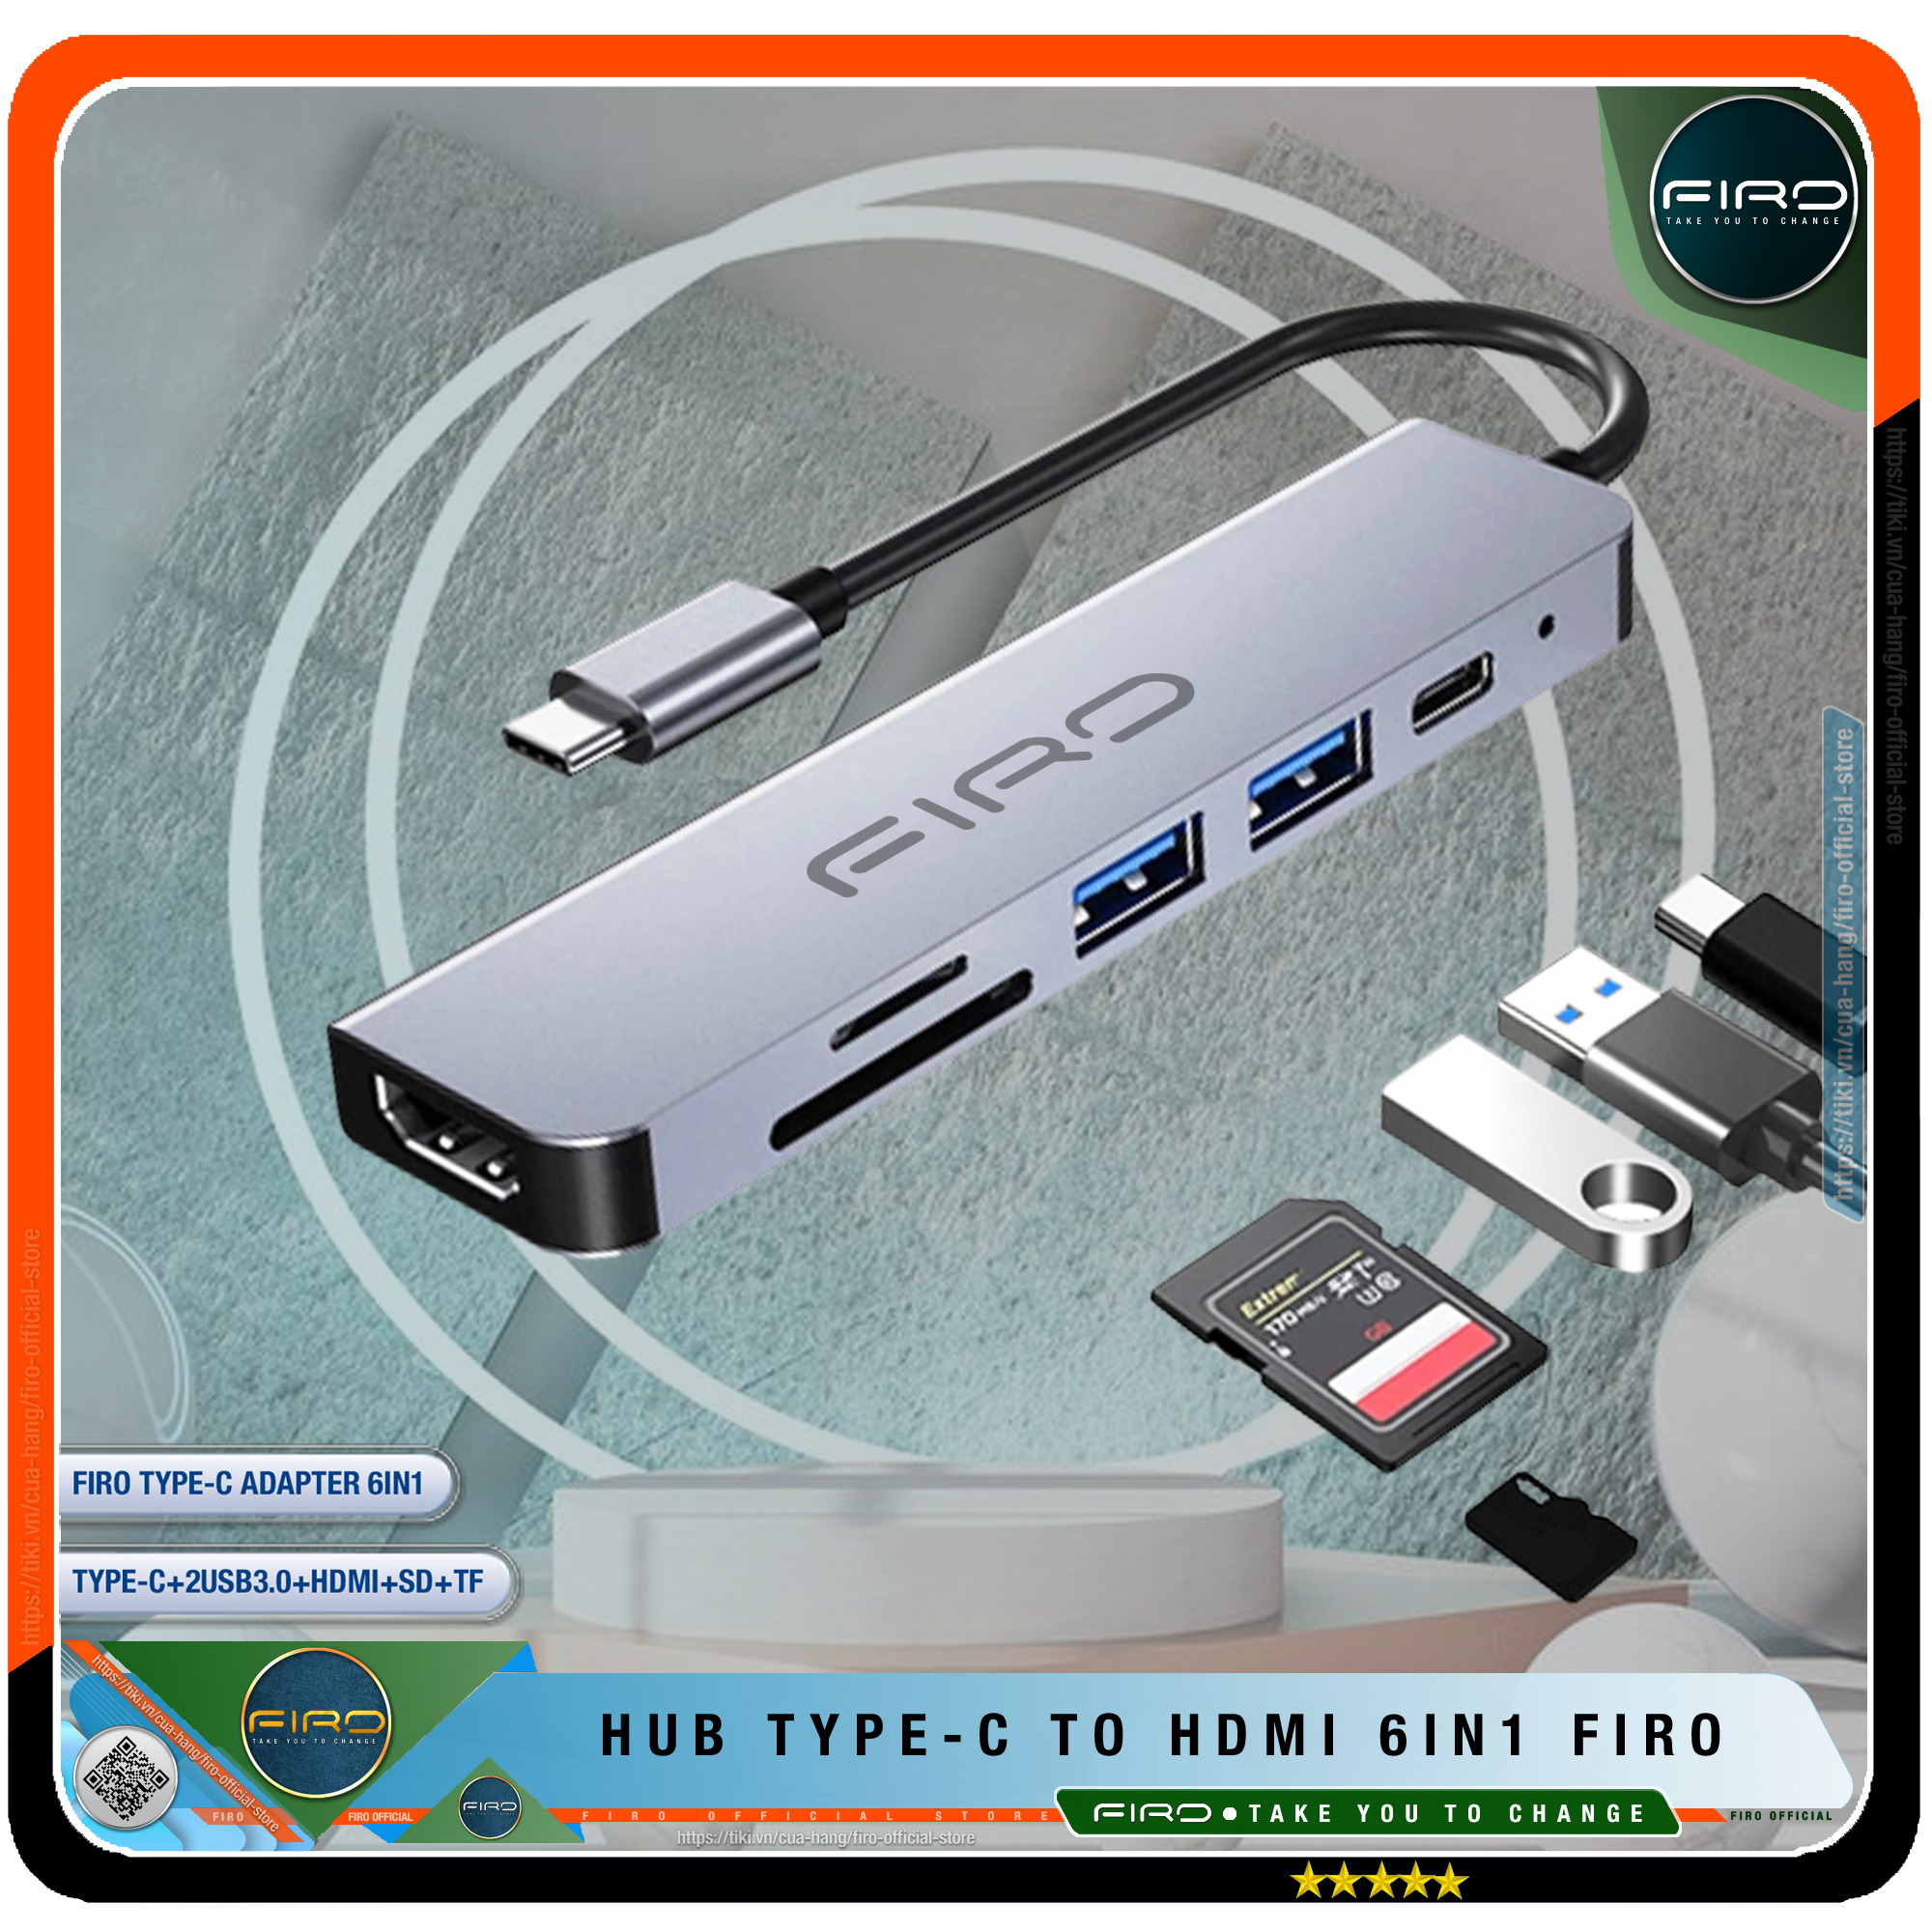 Hub Type-C To HDMI FIRO 6in1 Chuẩn HDTV - Hub Chuyển Đổi Type-C Chia 6 Cổng - 1 Cổng HDMI/HDTV 4K, 2 Cổng USB 3.0, 2 Khe Đọc Thẻ TF Và SD, 1 Cổng Sạc Nhanh Type C PD - Kết Nối Tốc Độ Cao - Dùng Cho Smartphone/Laptop/PC/Tivi/Playstation – Hàng Chính Hãng